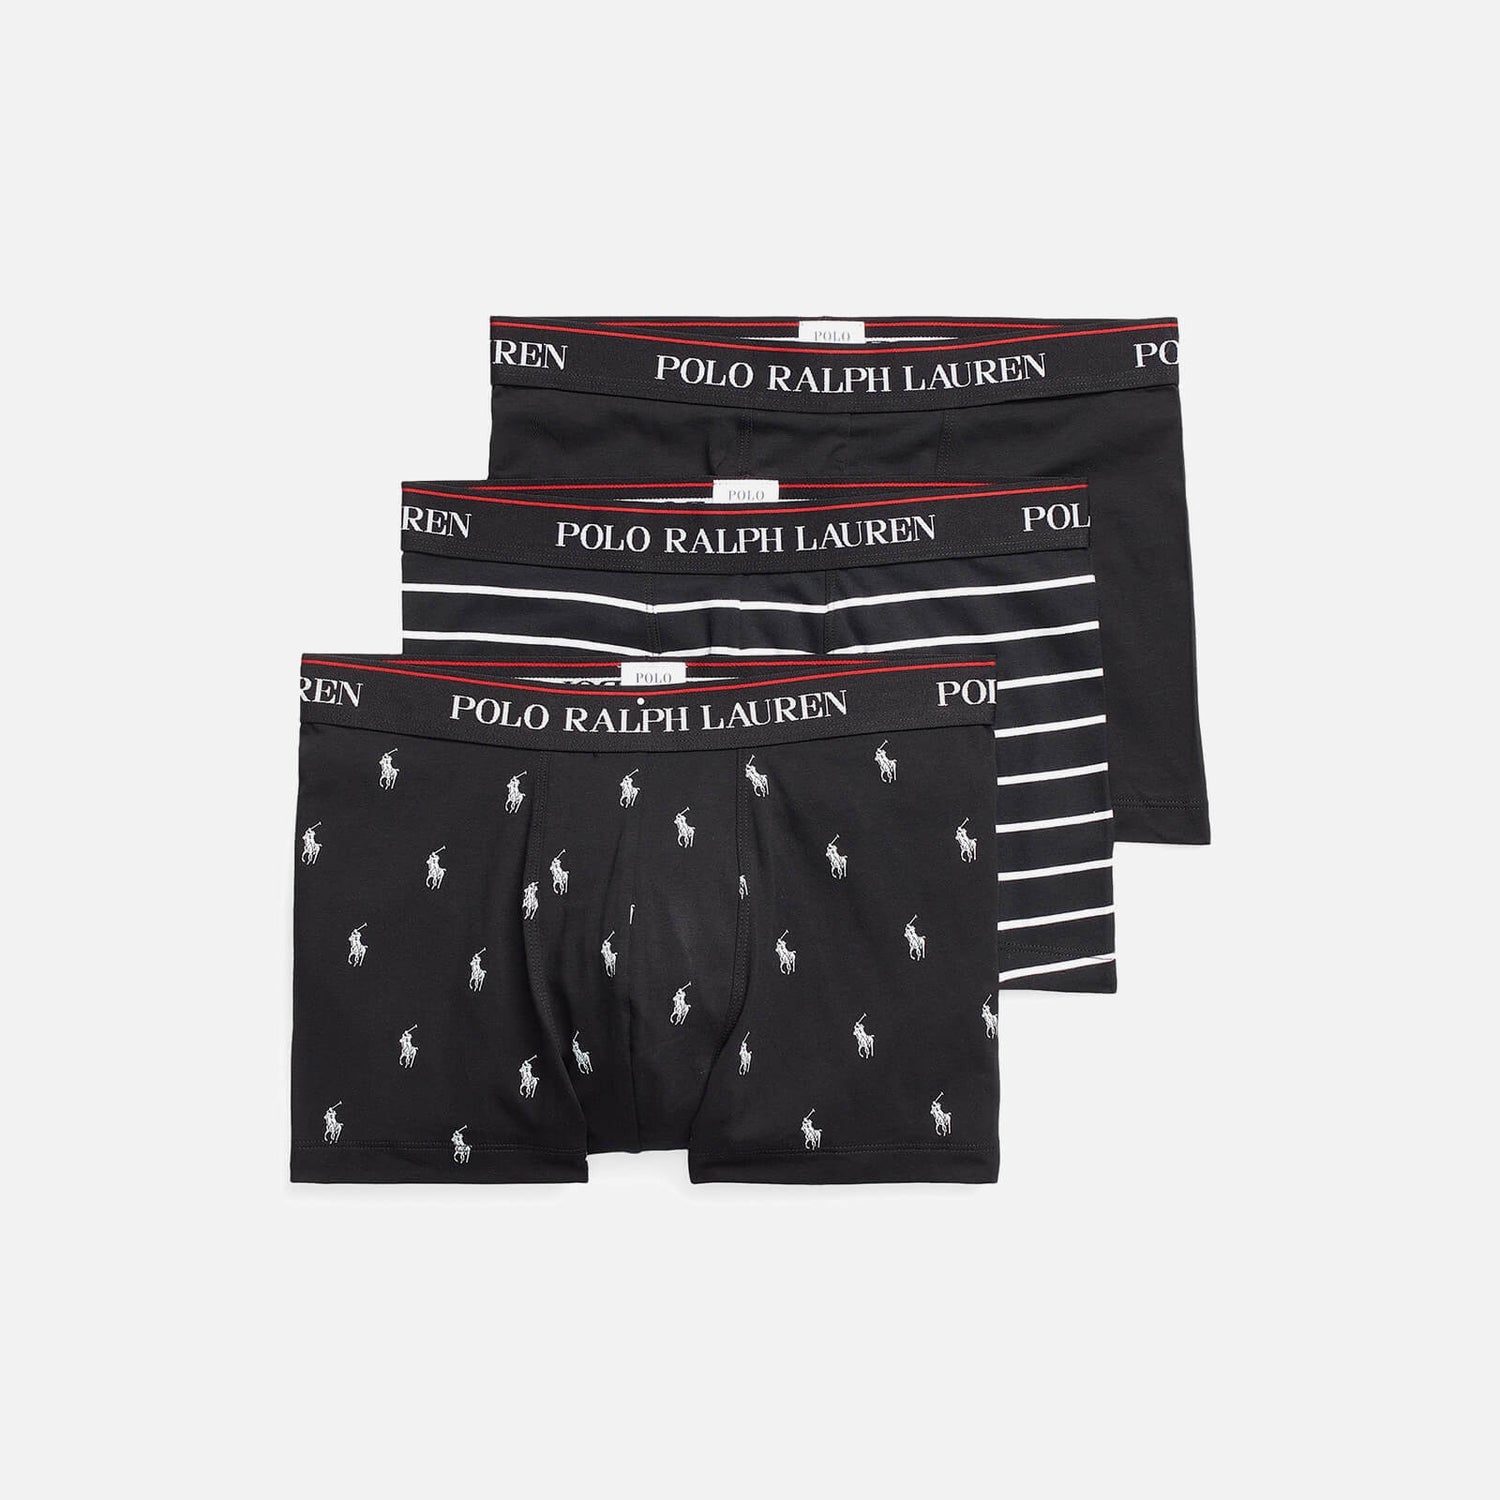 Polo Ralph Lauren Men's Classic 3 Pack Trunks - Black/Black White Stripe/Black Allover - M